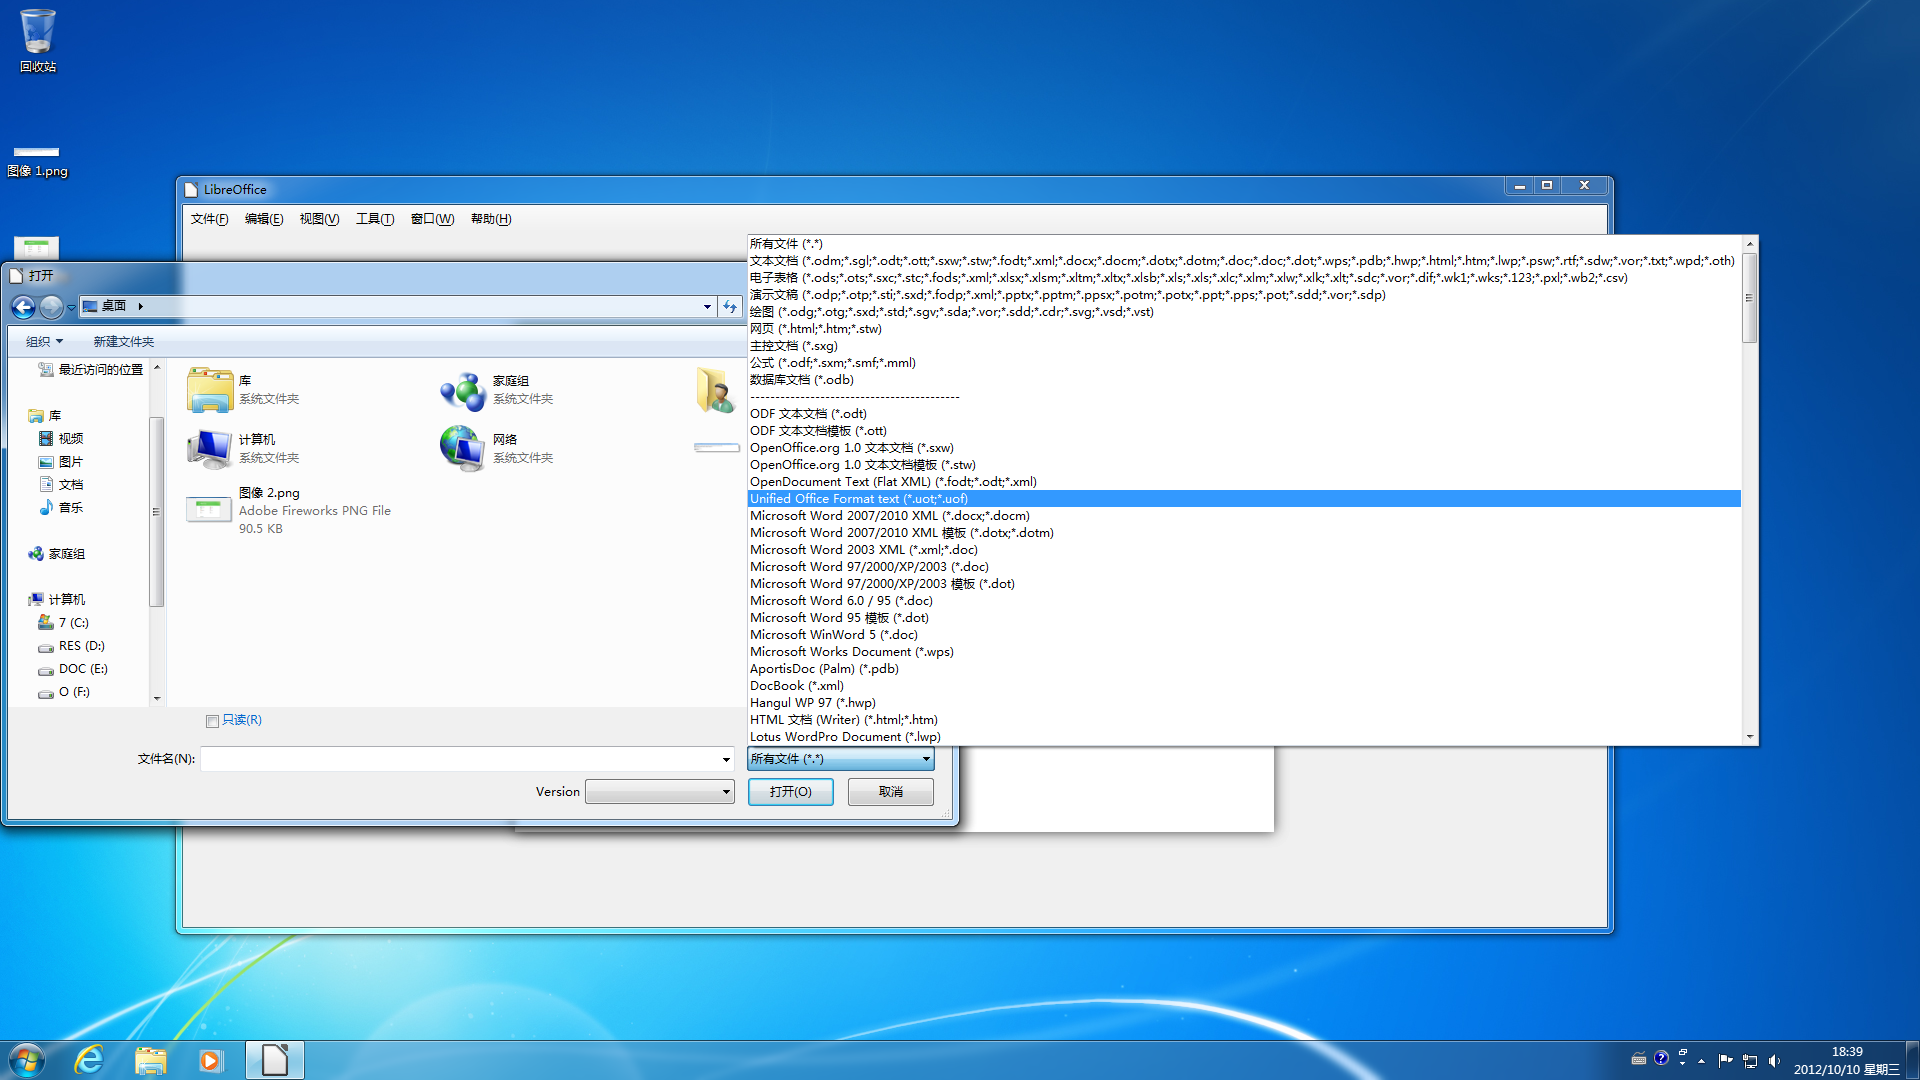 LibreOffice 能夠支持眾多文檔格式